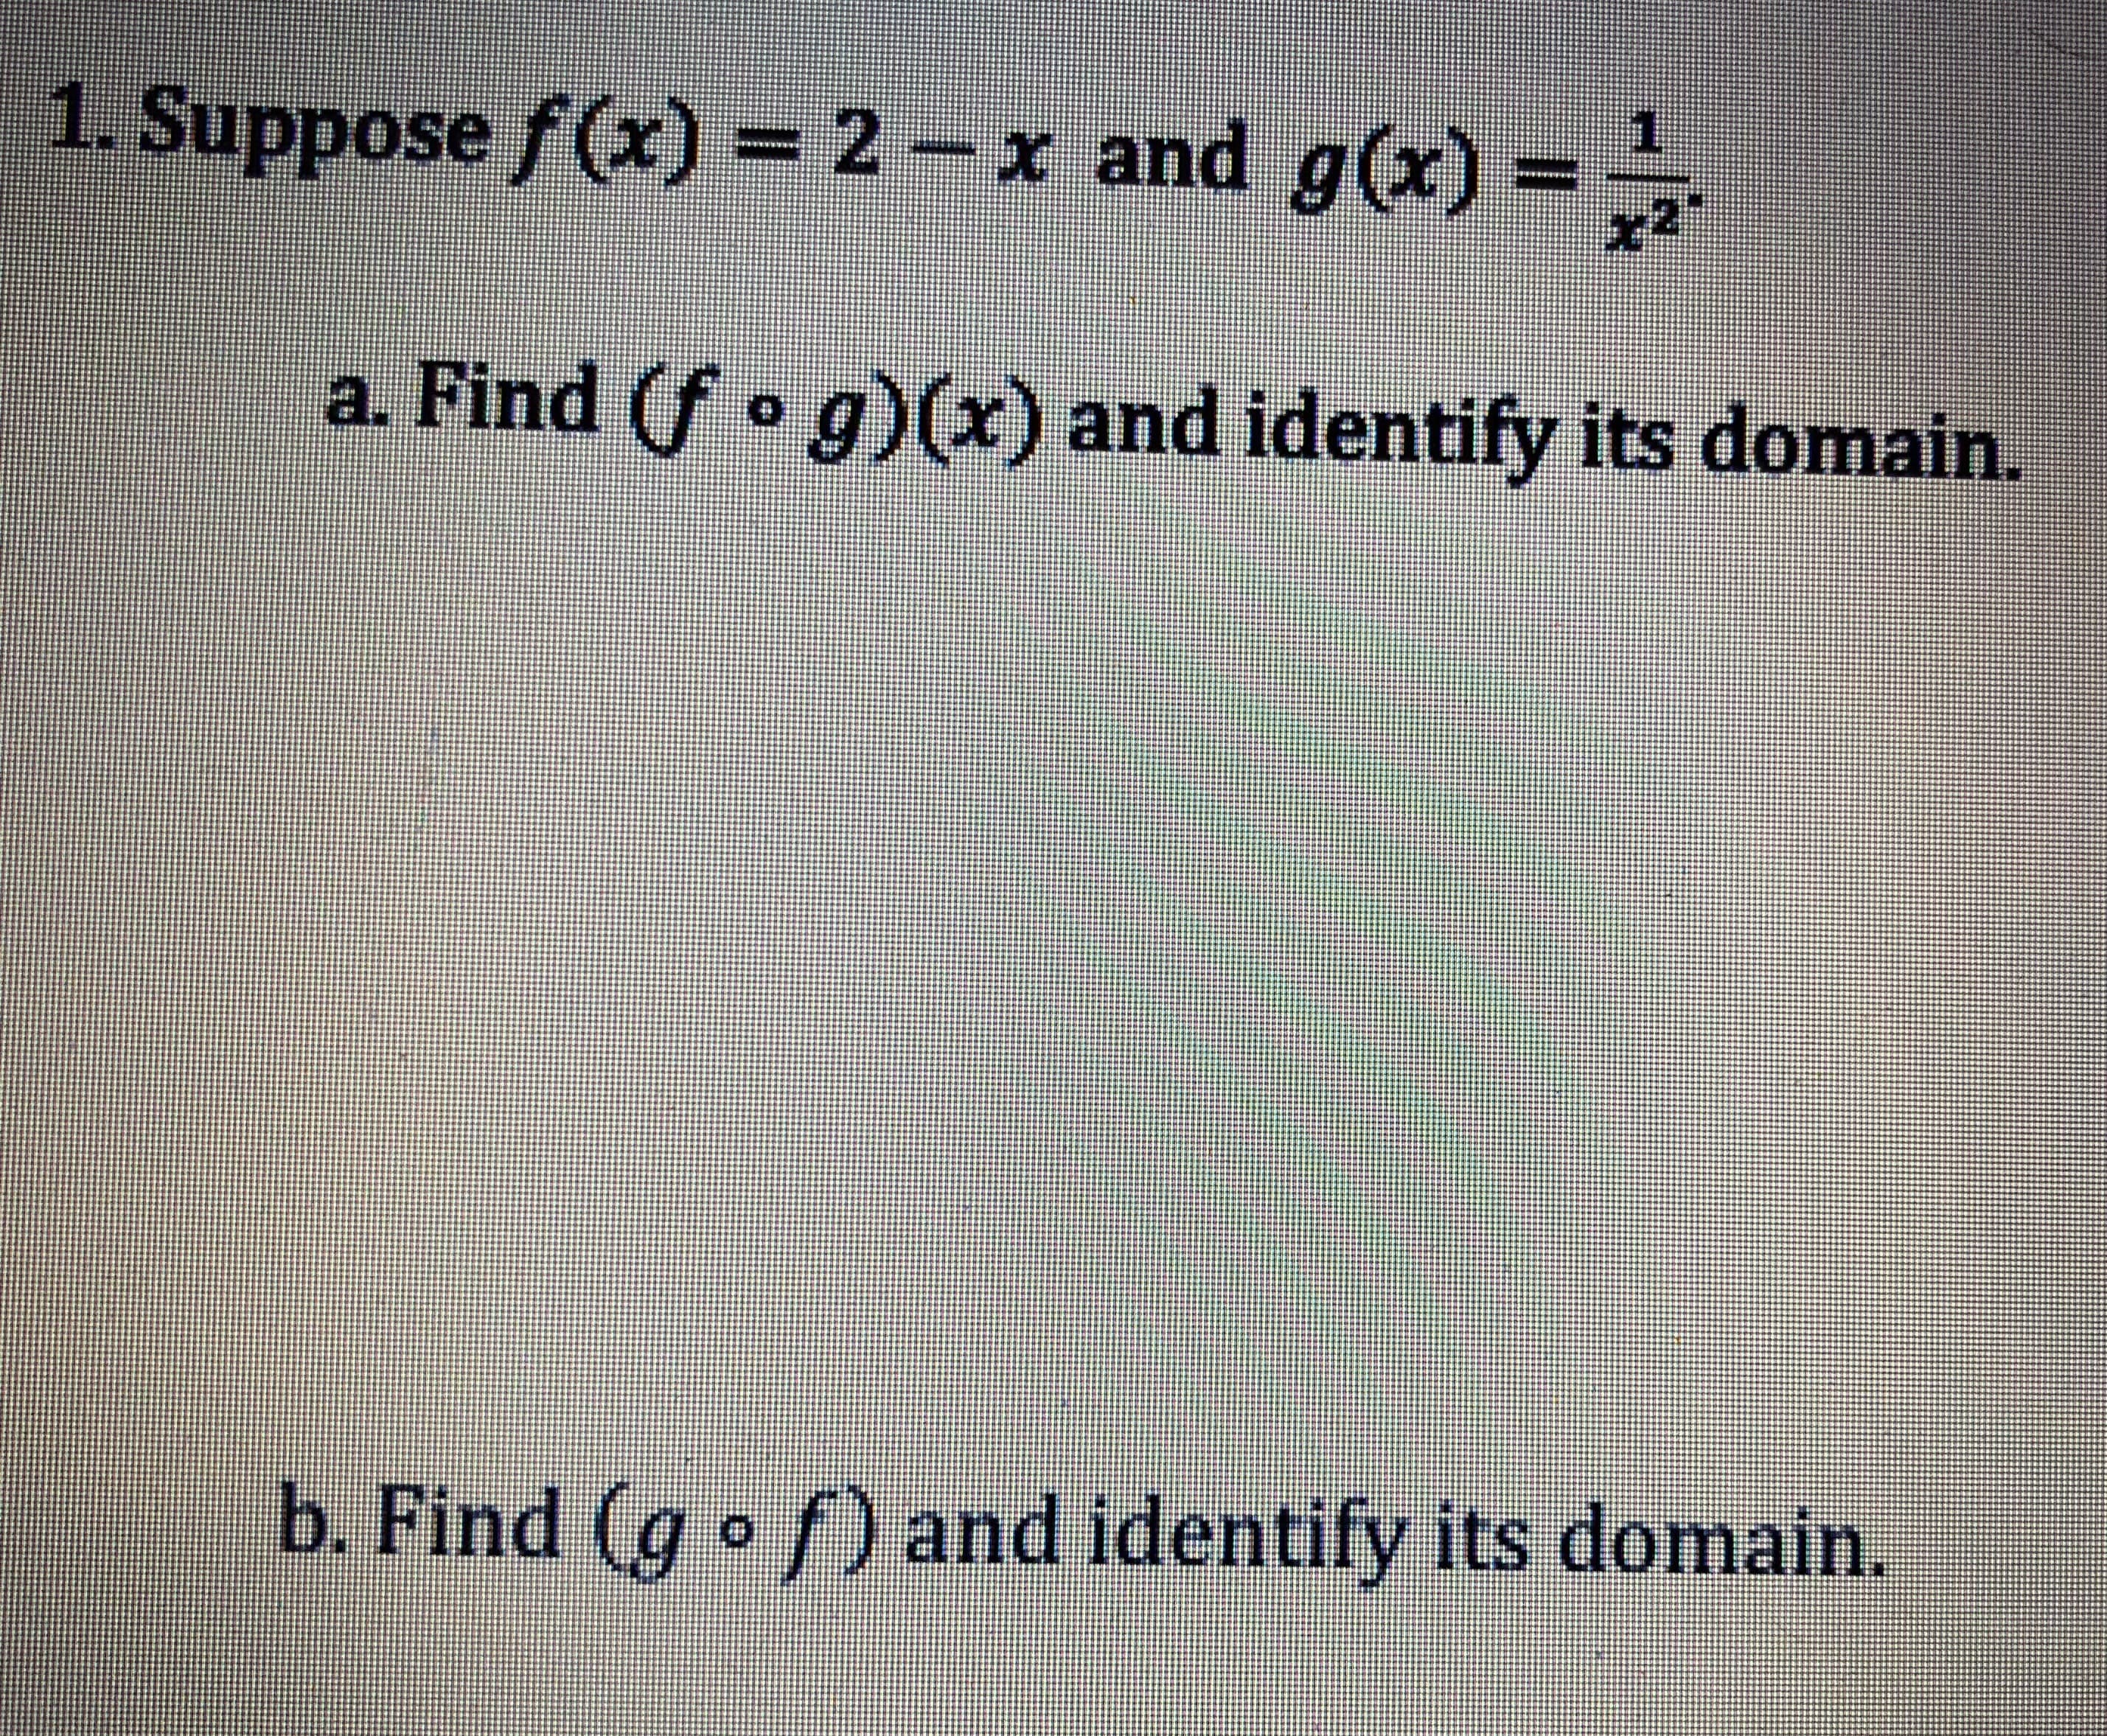 1. Suppose f(x) = 2-x and g(x) = x2
a. Find (f ° g)(x) and identify its domain.
bi Find (per) and Identify its domain
